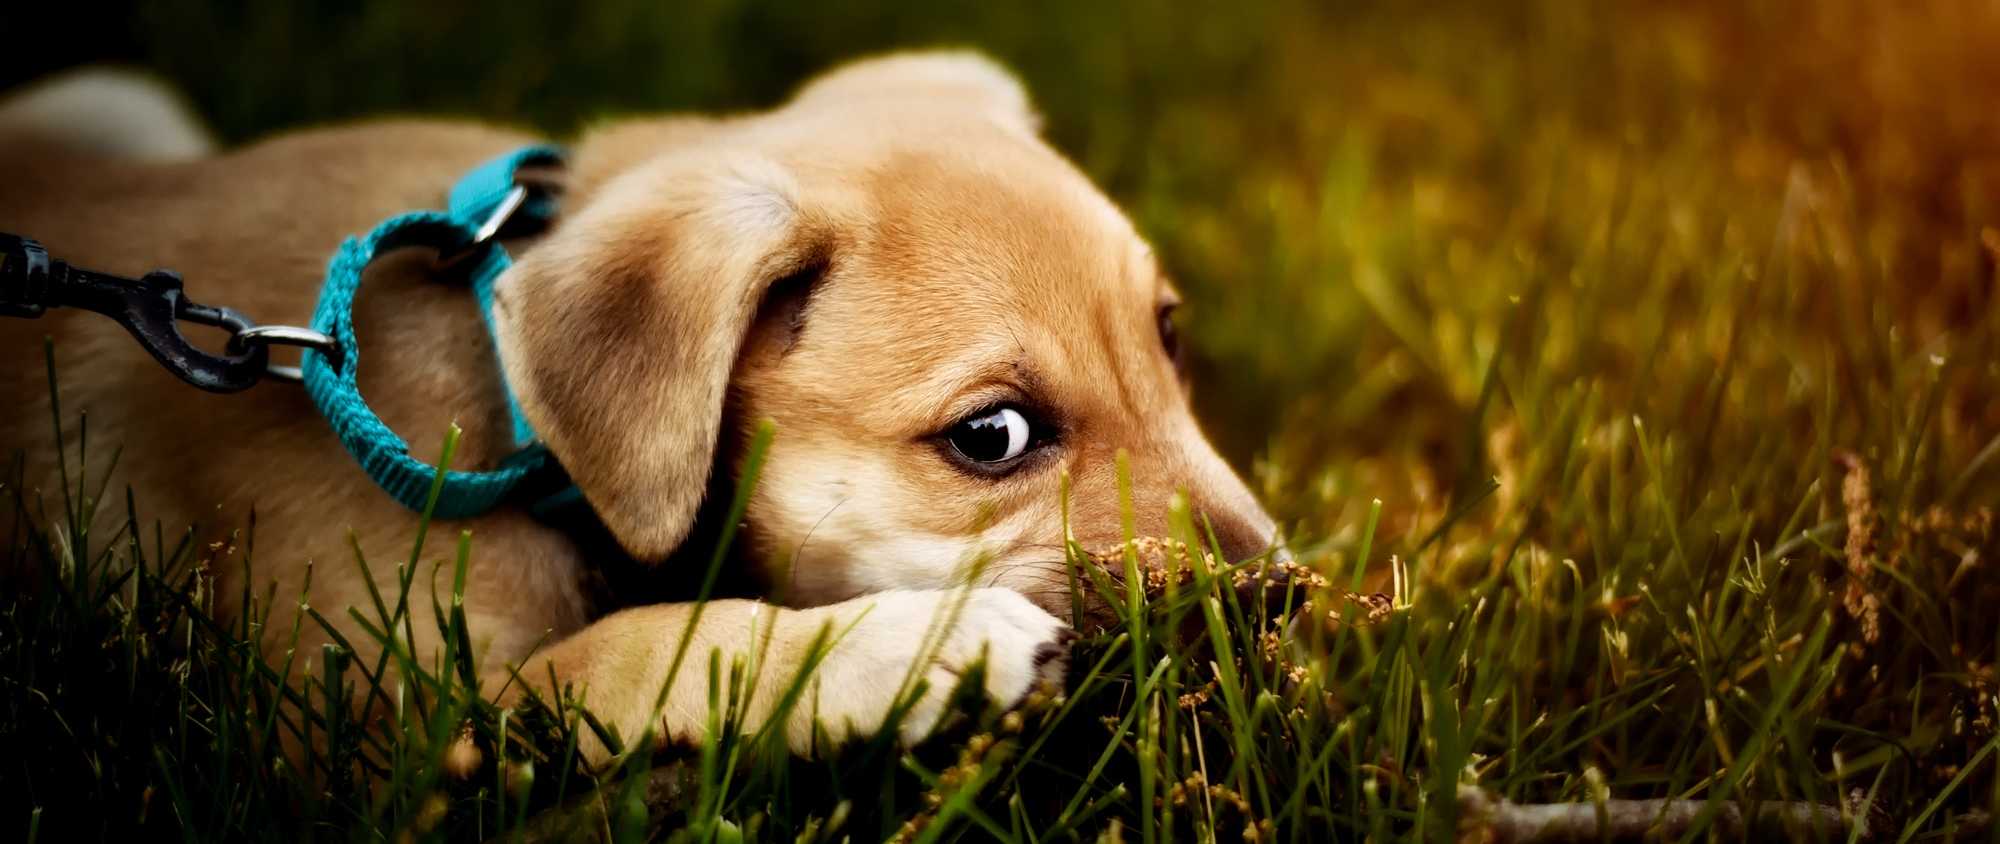 Hund mit Hundeaugen im Grass